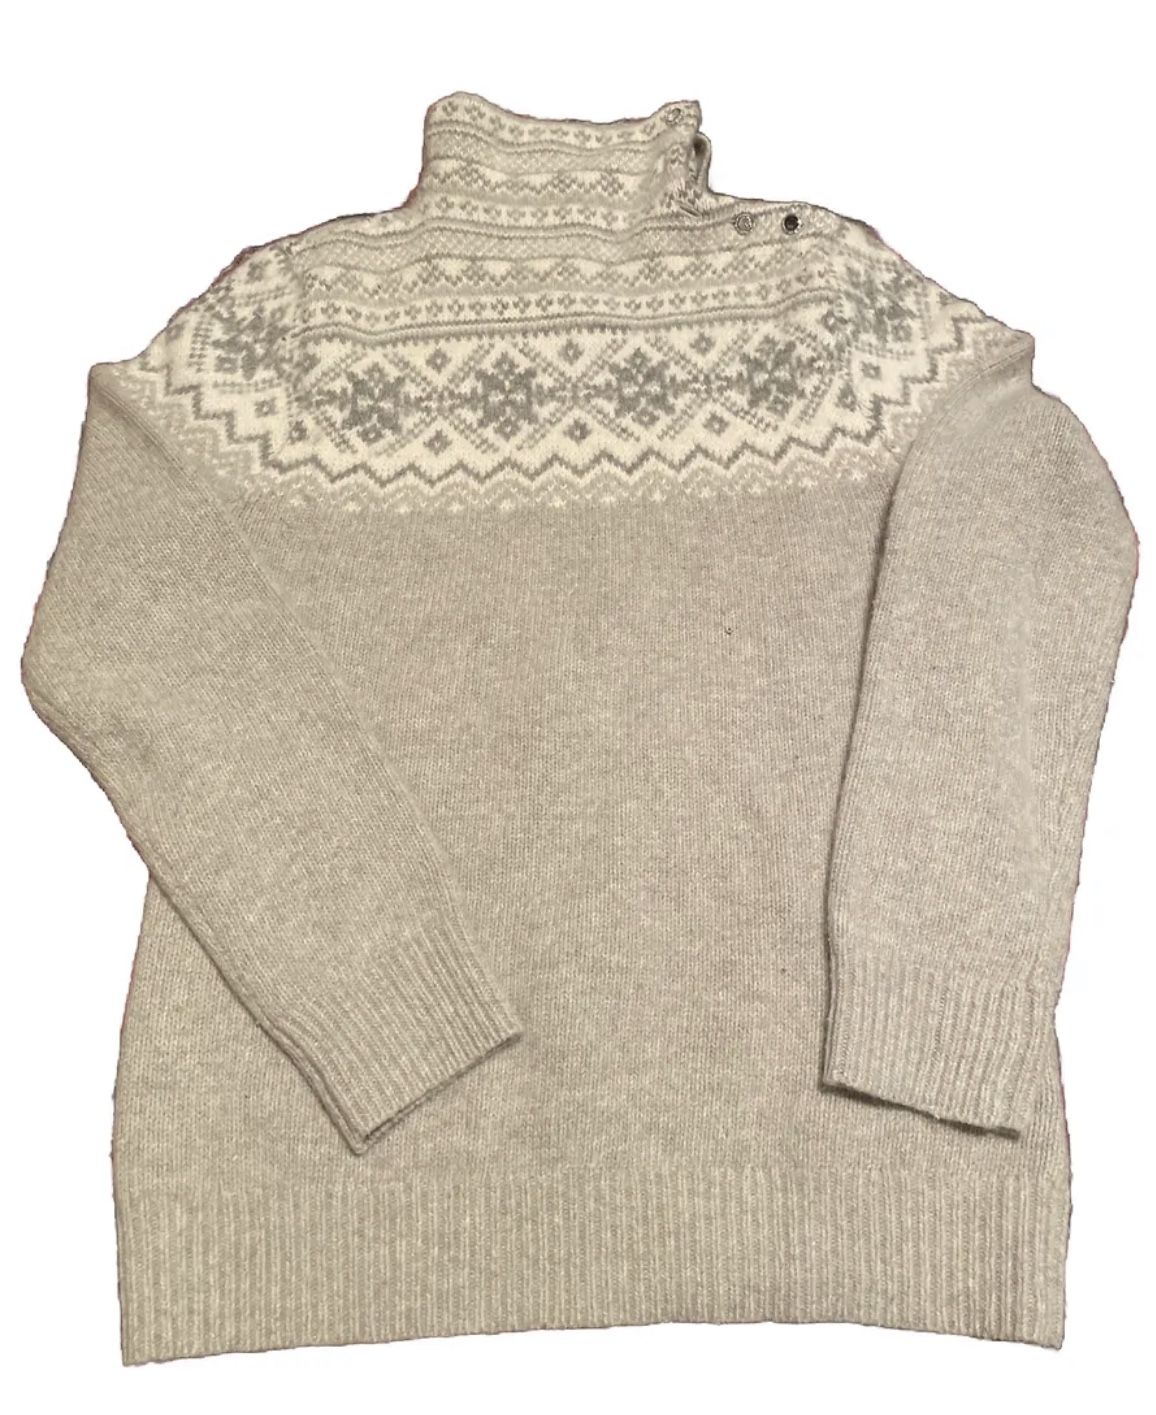 lauren ralph lauren Wool/ Rabbit Hair Sweater Size 